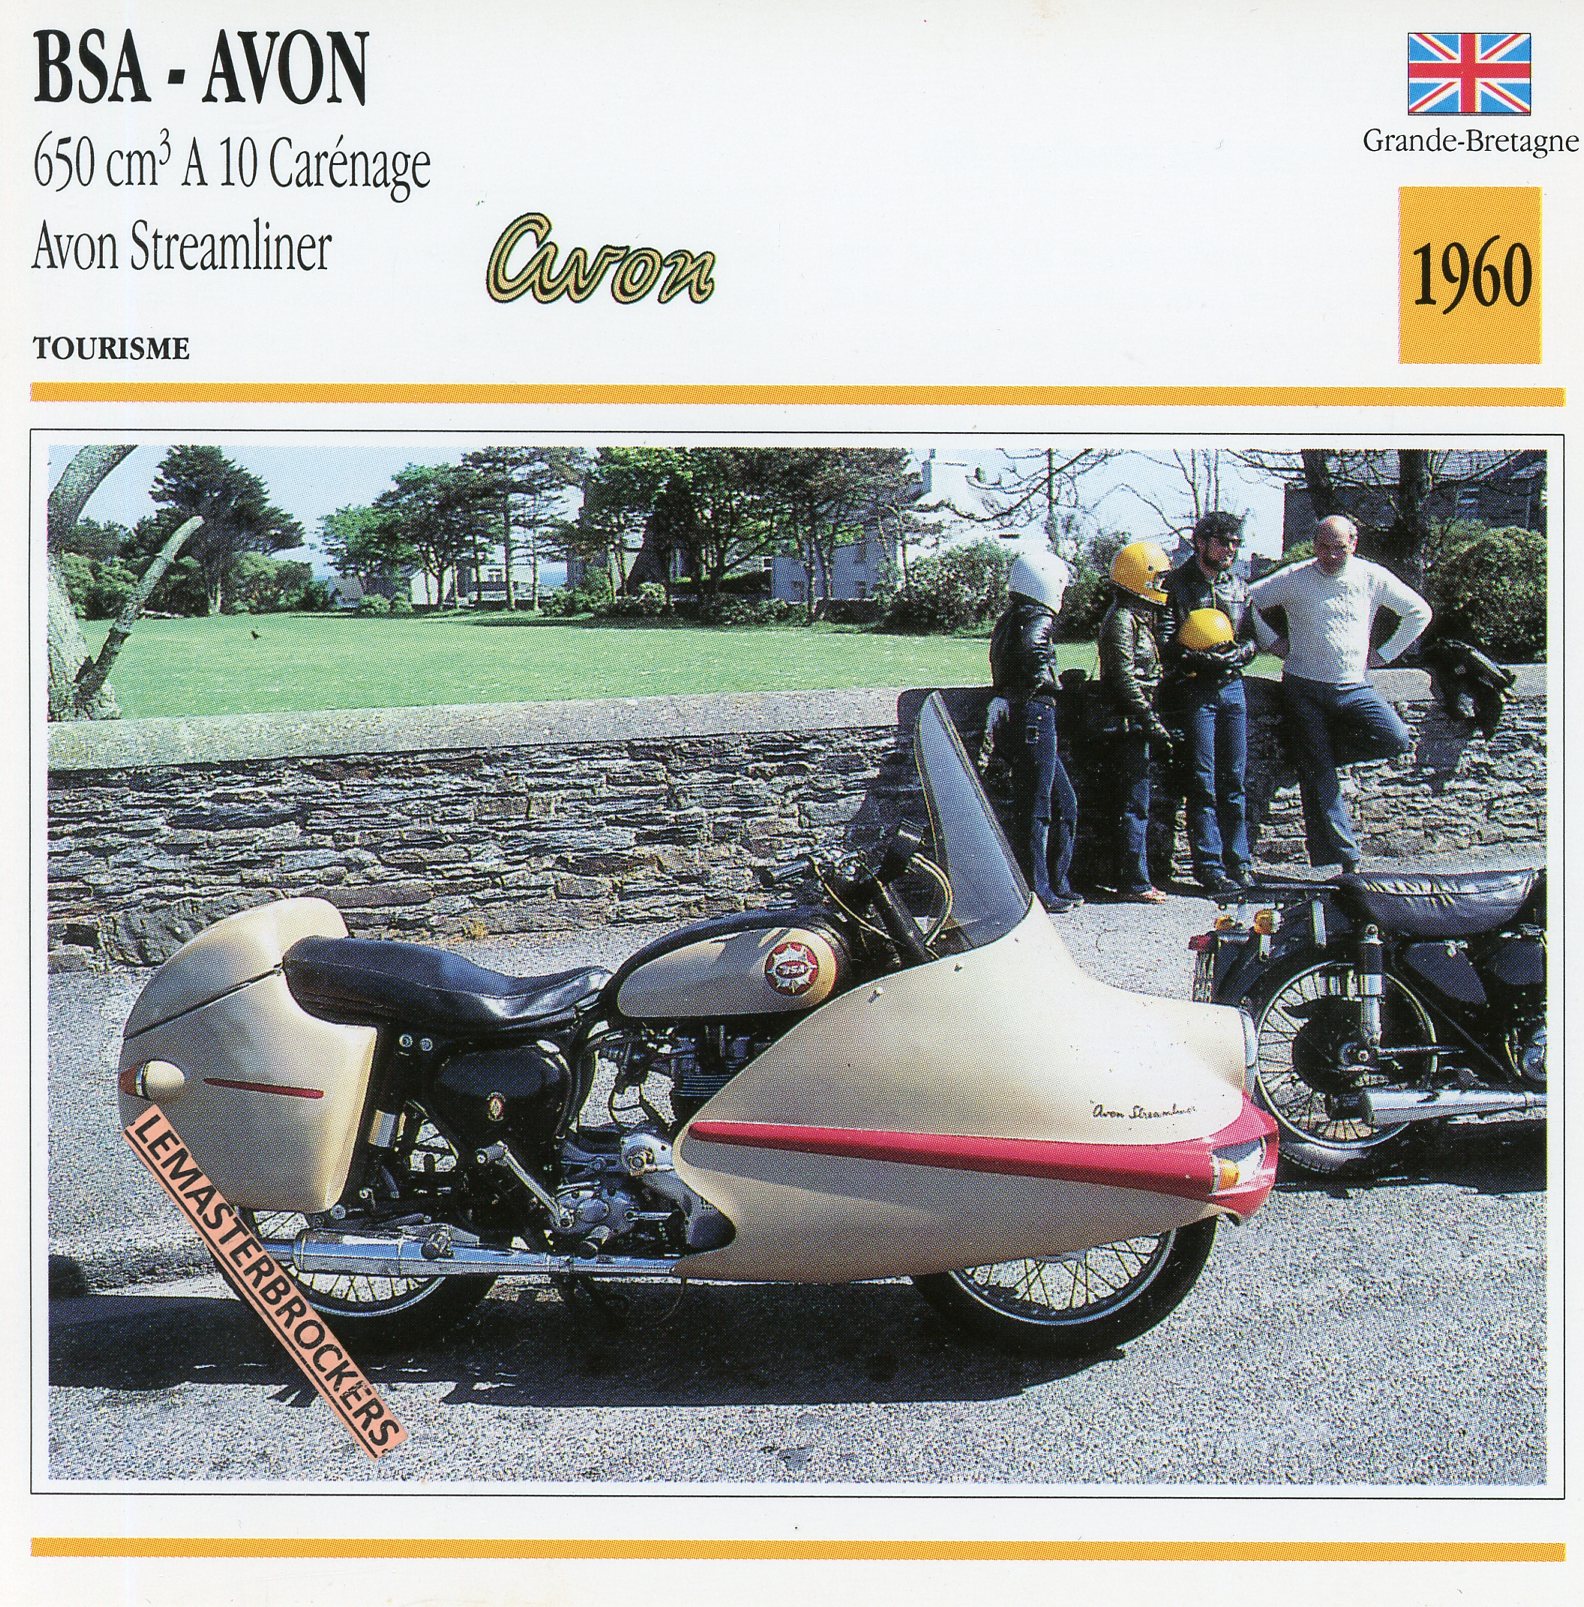 BSA-AVON-650-A10-STREAMLINER-1960-FICHE-MOTO-CARDS-ATLAS-LEMASTERBROCKERS